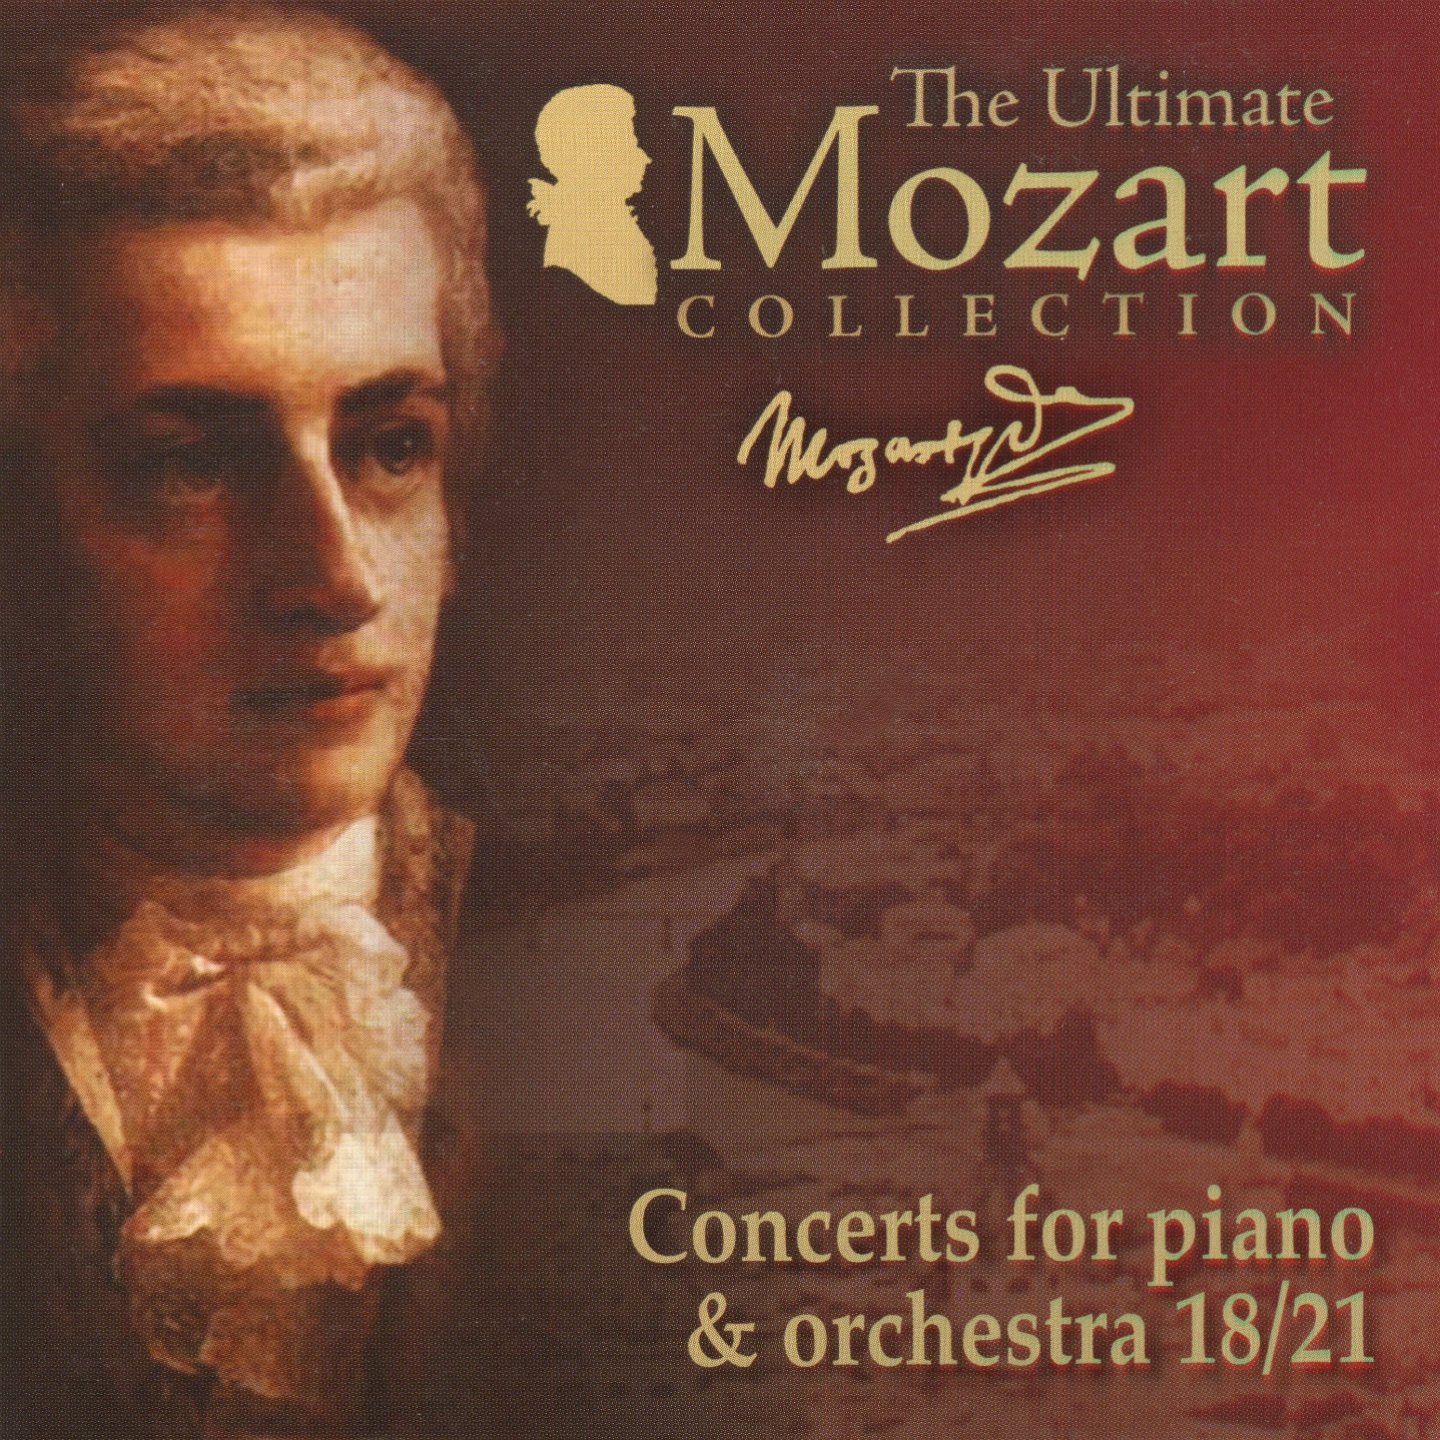 Piano Concerto No. 21 in C Major, K. 467:I. Allegro maestoso